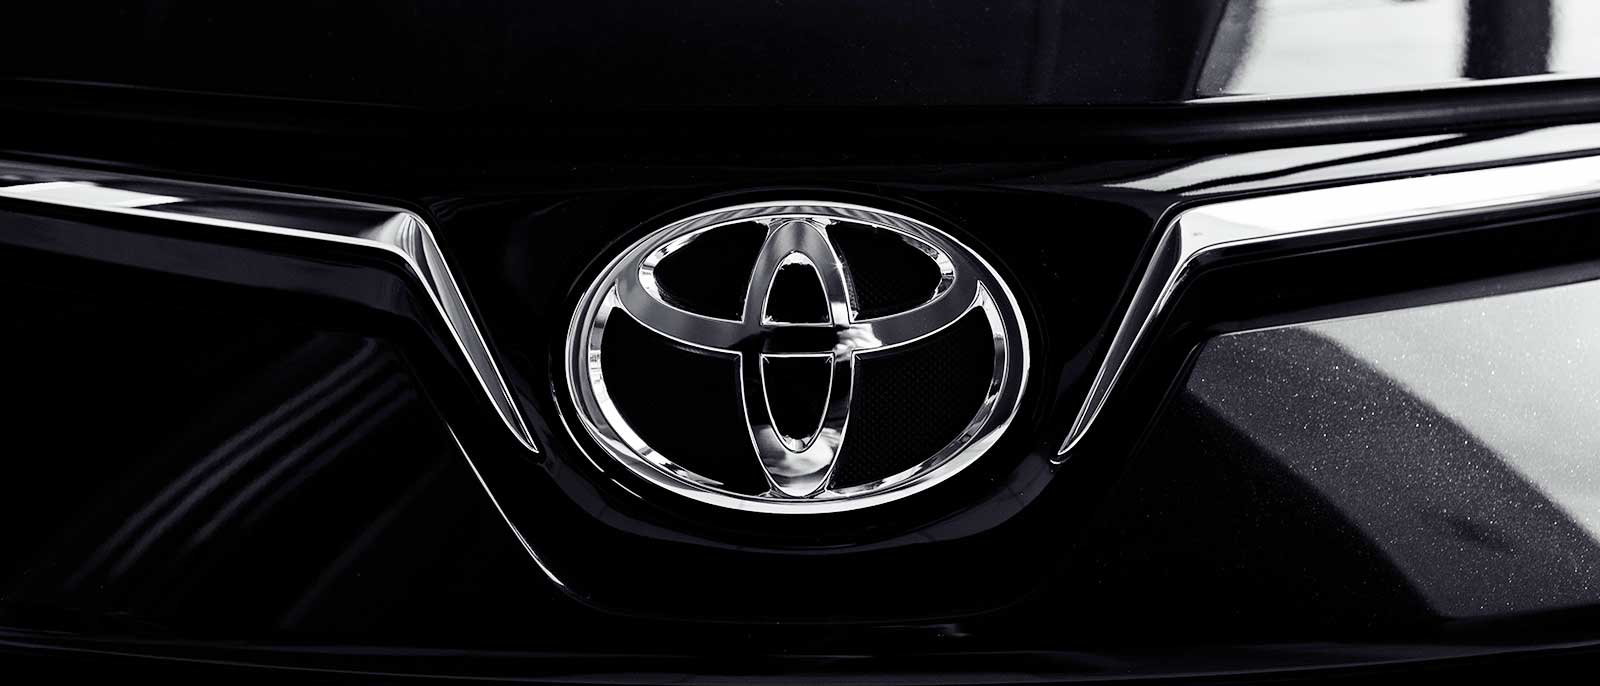 Toyota ulubioną marką motoryzacyjną konsumentów w nowym rankingu Forbes Halo 100